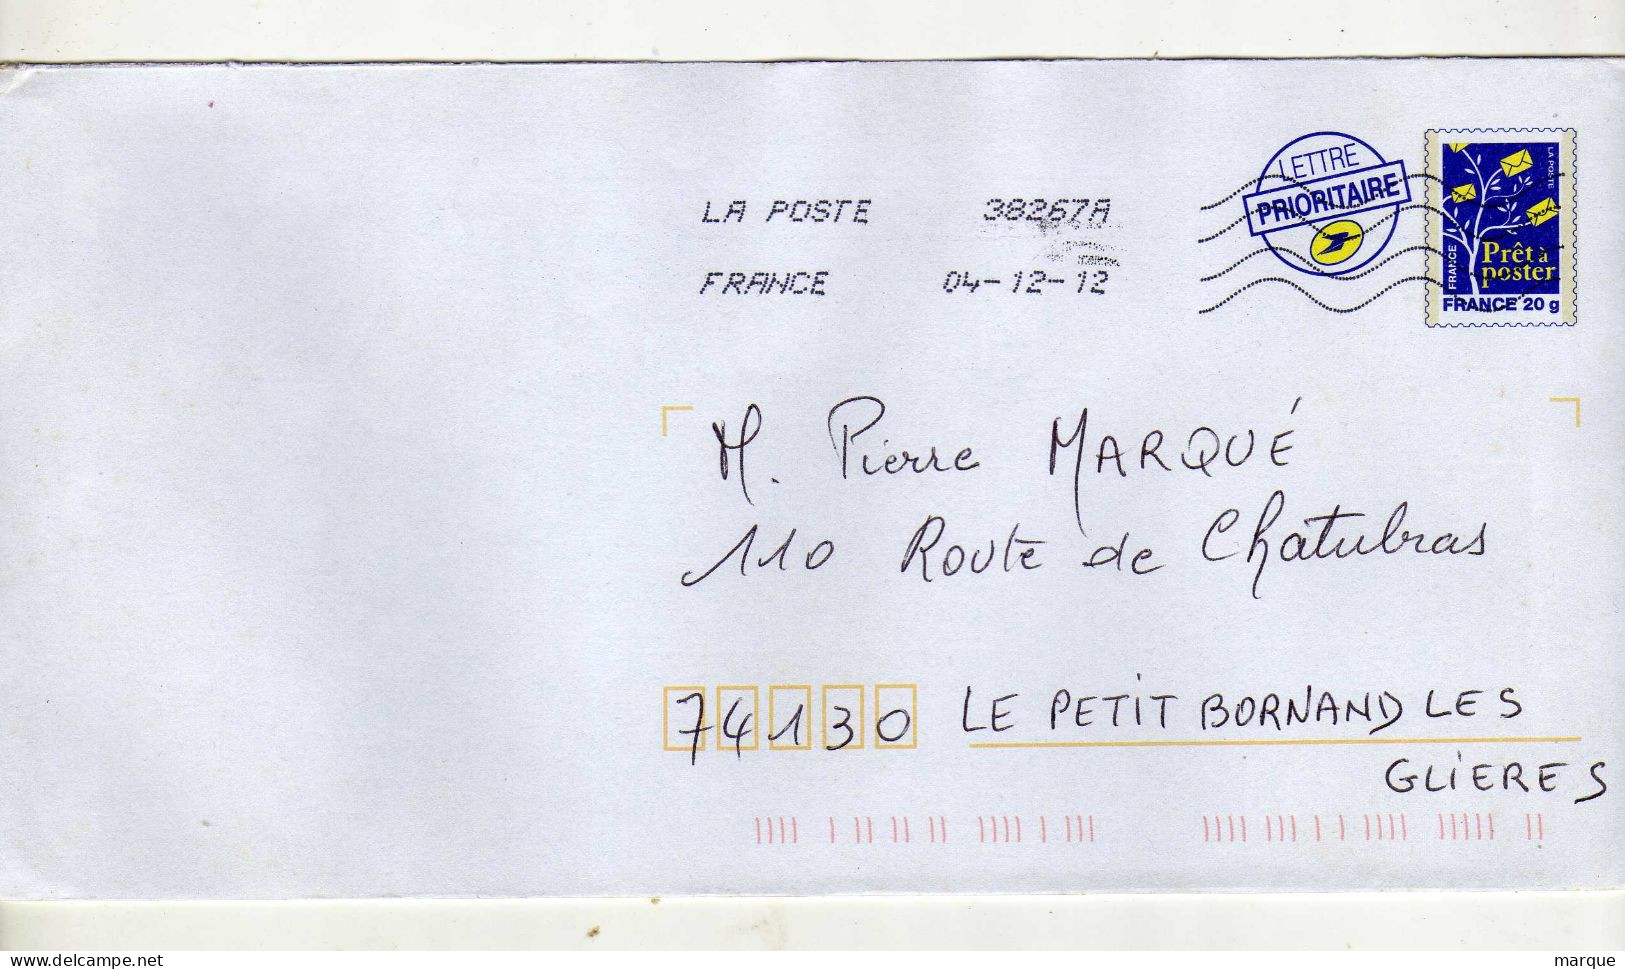 Enveloppe FRANCE Prêt à Poster Lettre Prioritaire 20g Oblitération LA POSTE 38267A 04/12/2012 - PAP: Aufdrucke/Blaues Logo